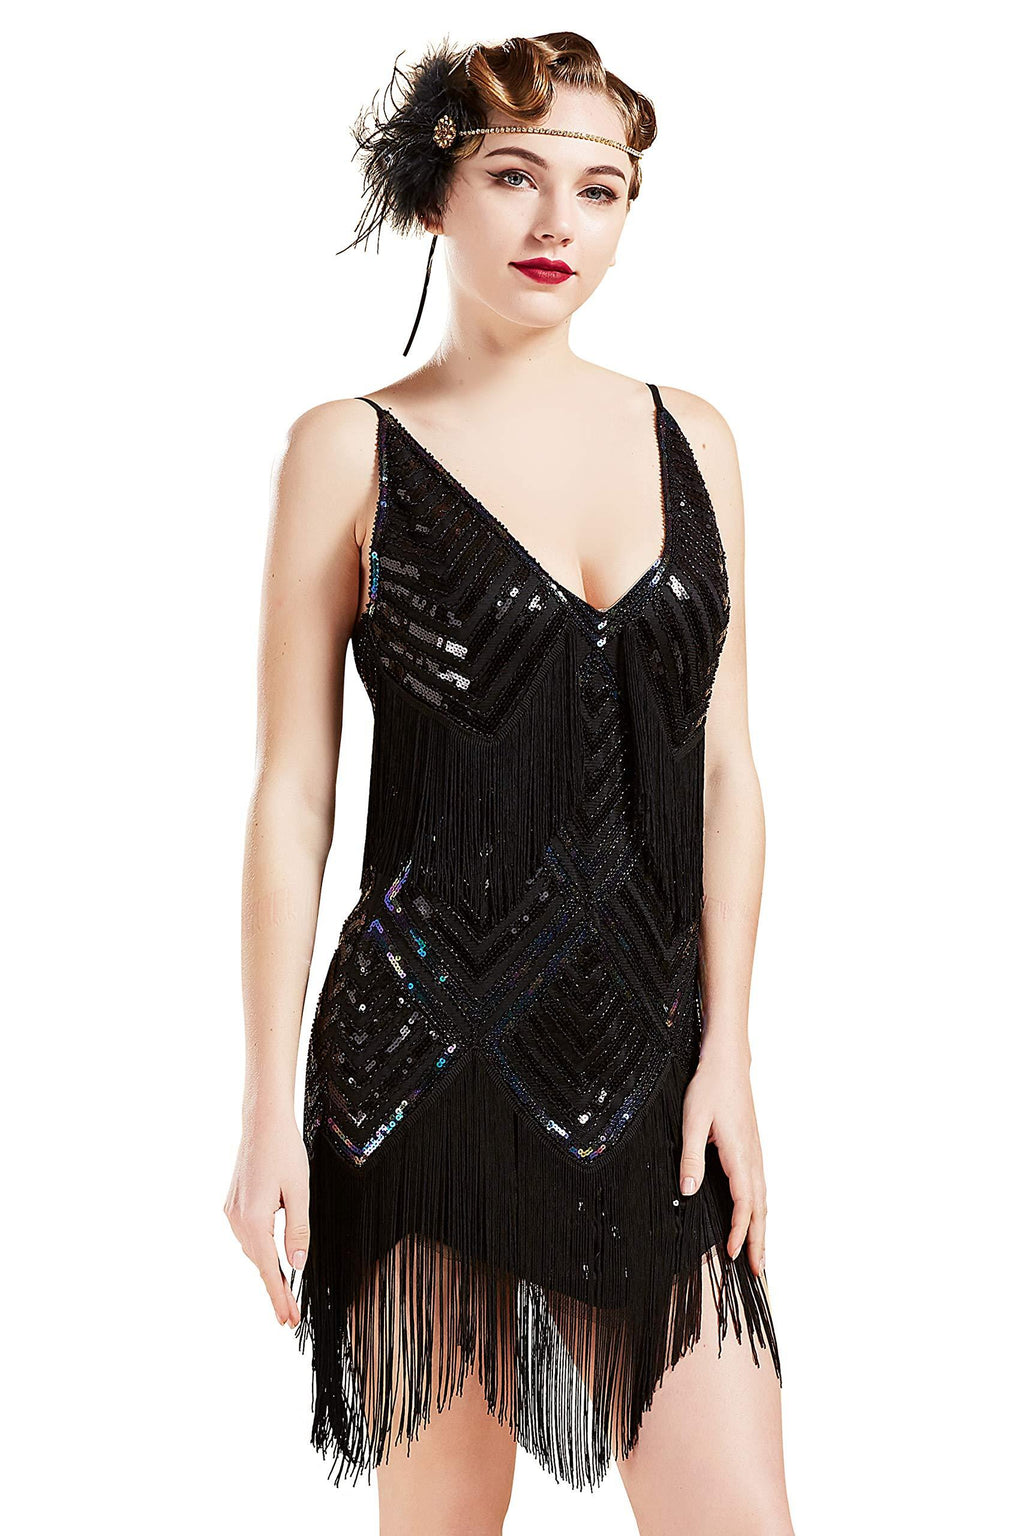 [Australia] - BABEYOND Women's 1920s Flapper Dress V Neck Slip Dress Roaring 20s Great Gatsby Dress for Party Black Small 